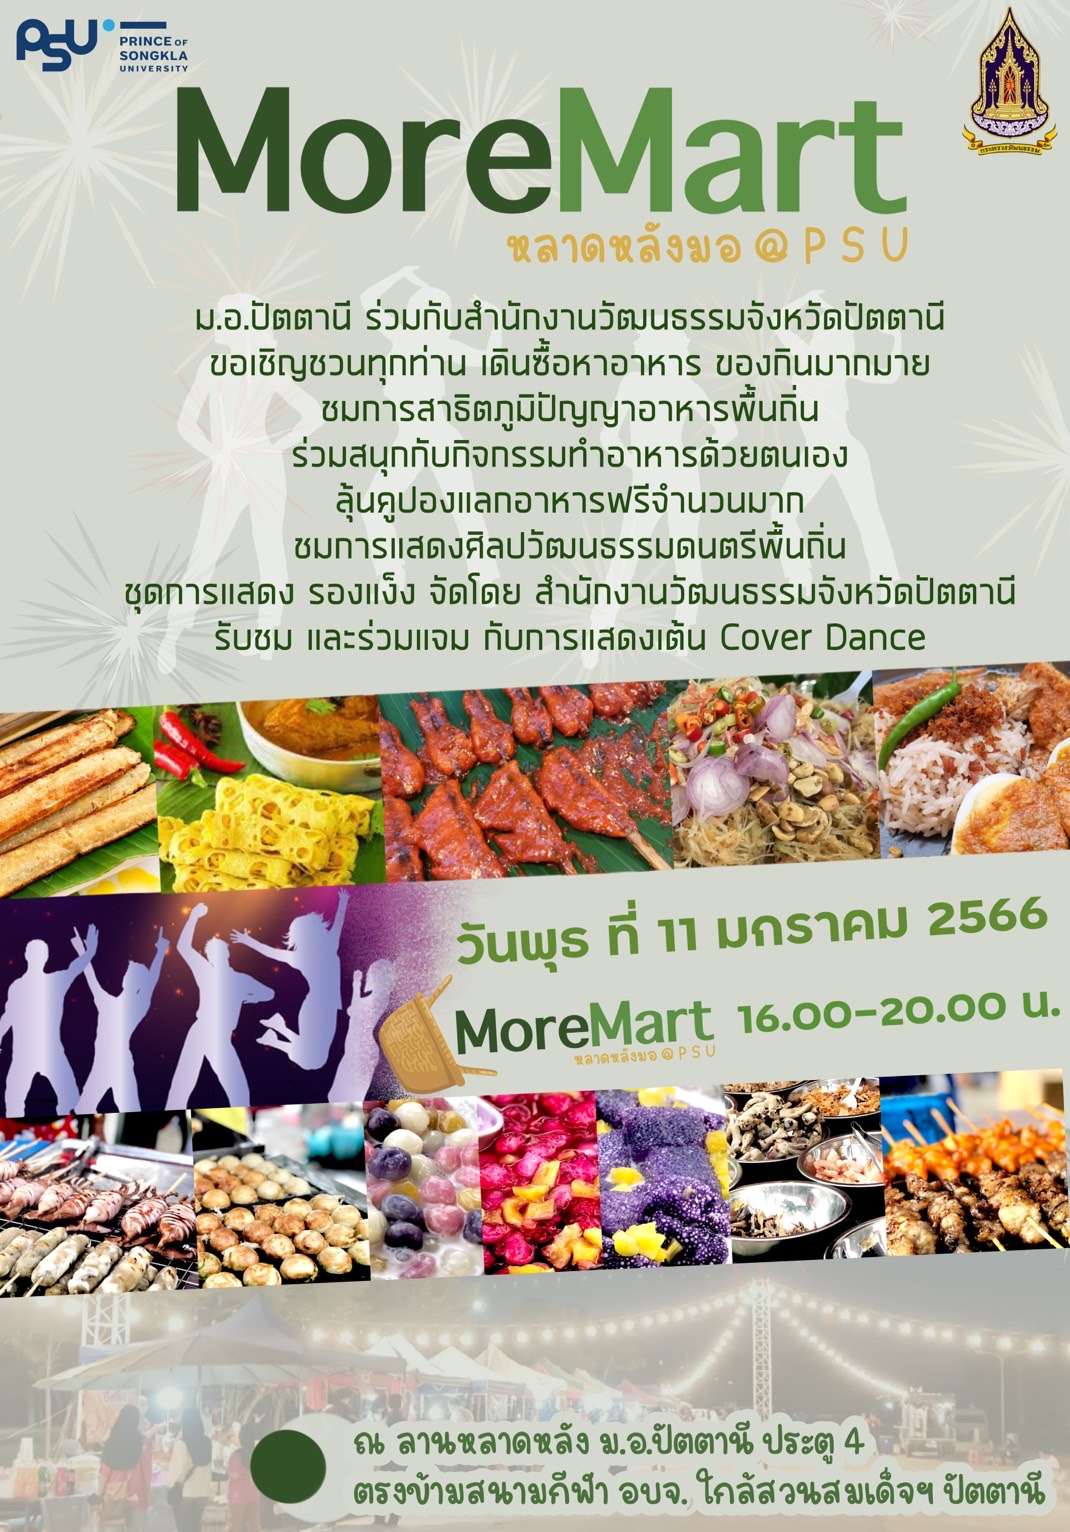 ม.อ.ปัตตานี ร่วมกับสำนักงานวัฒนธรรมจังหวัดปัตตานี ขอเชิญชวนชม ชิม ช็อป อาหารอร่อย #MoreMart ตลาดหลังมอ @ PSU  